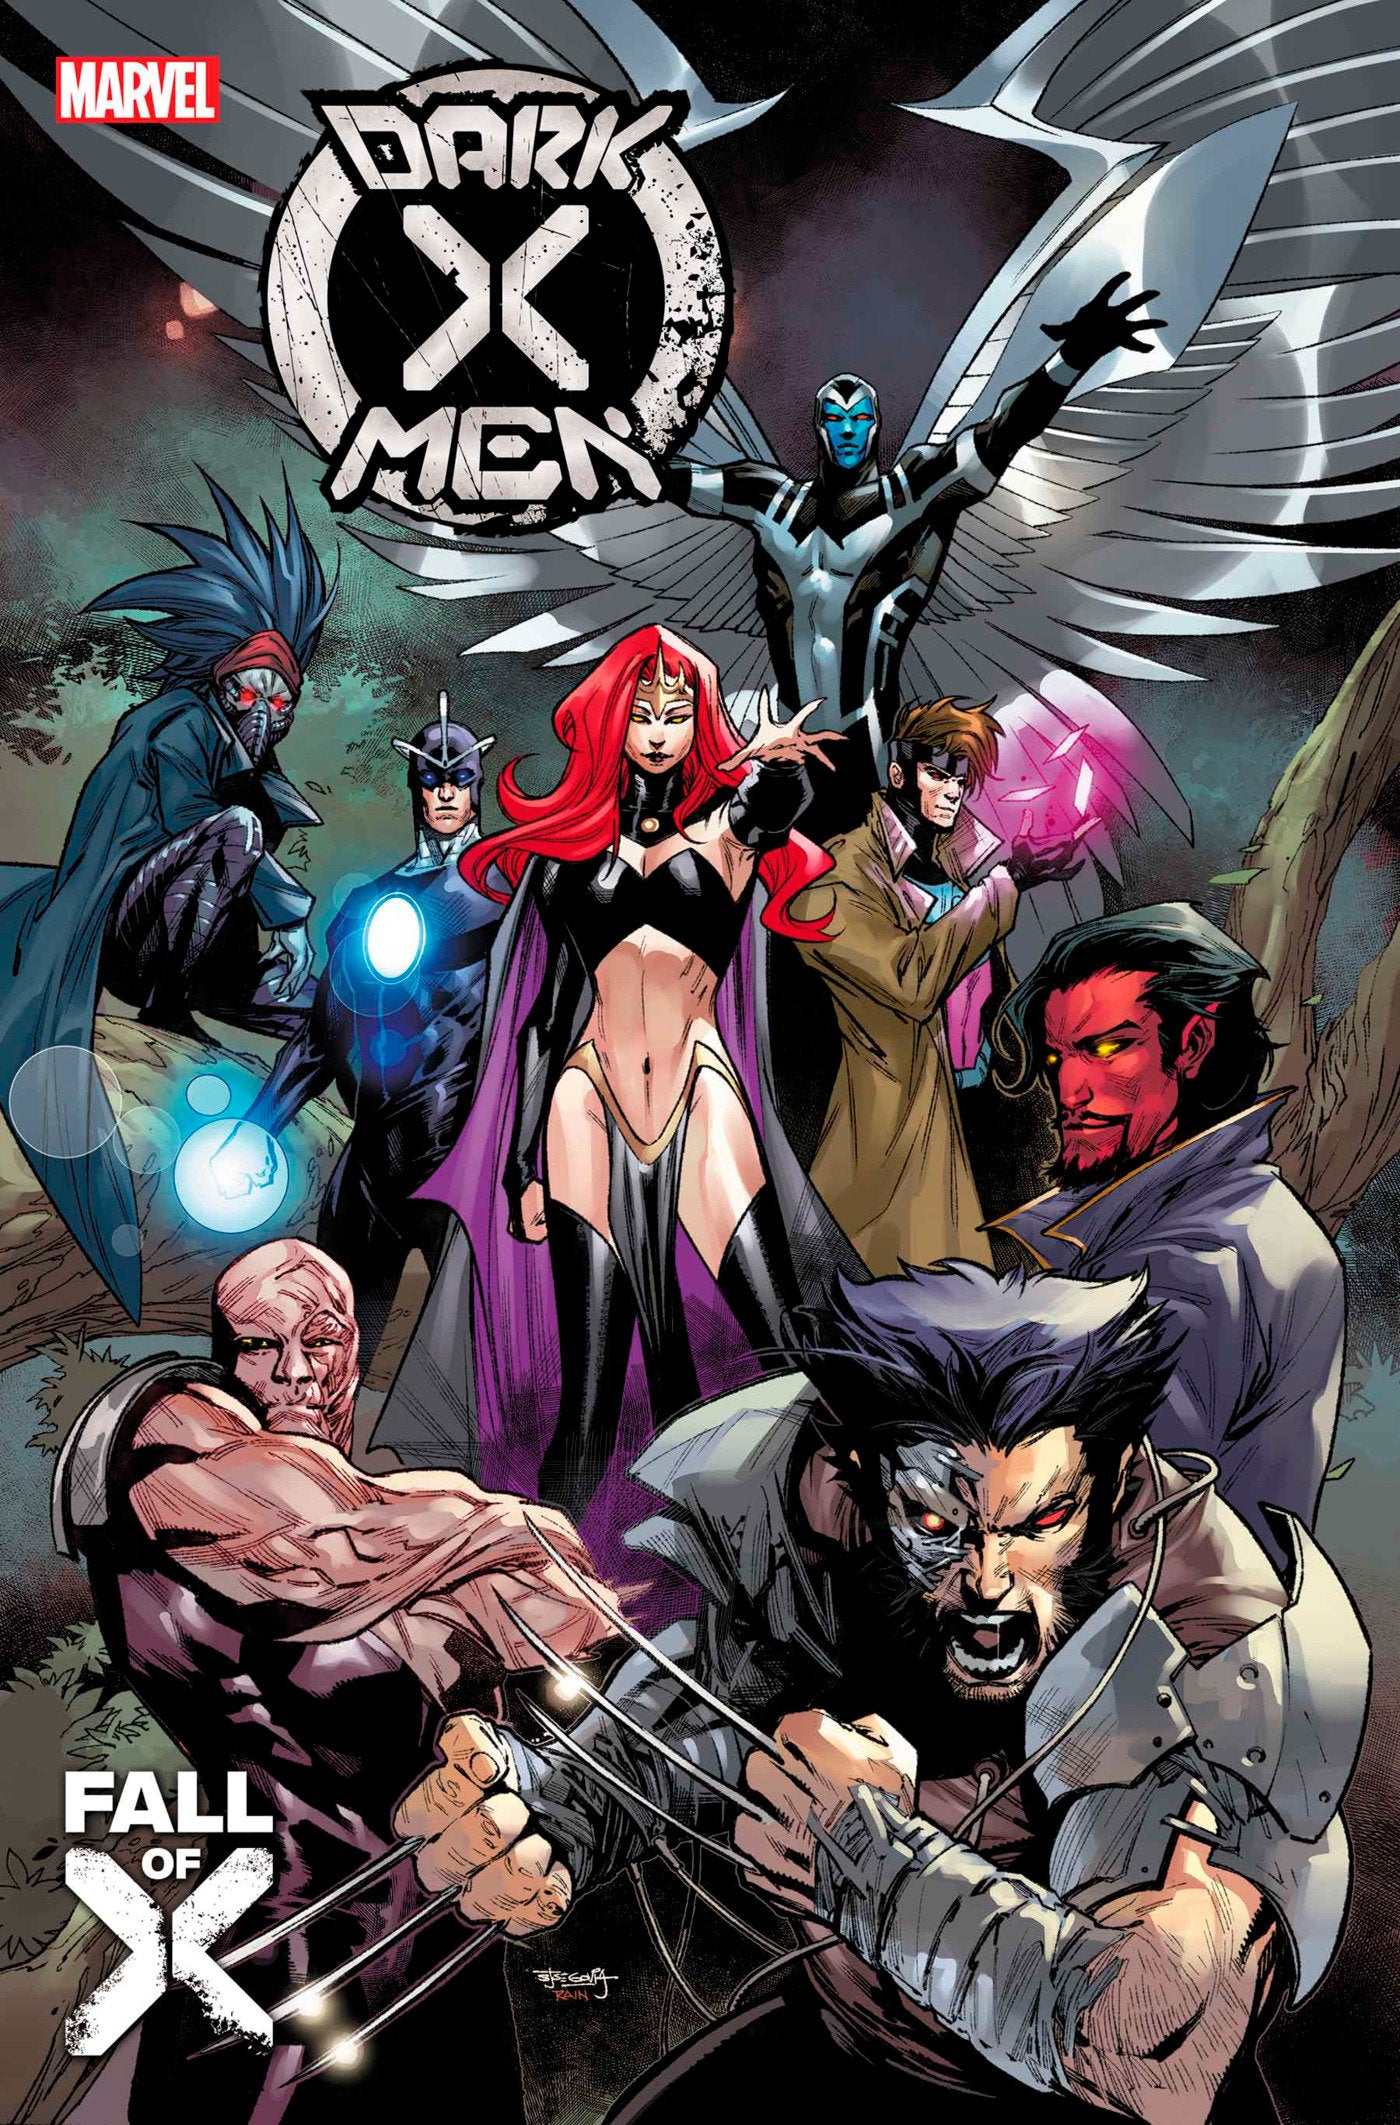 Dark X-Men 1 [Fall] | L.A. Mood Comics and Games